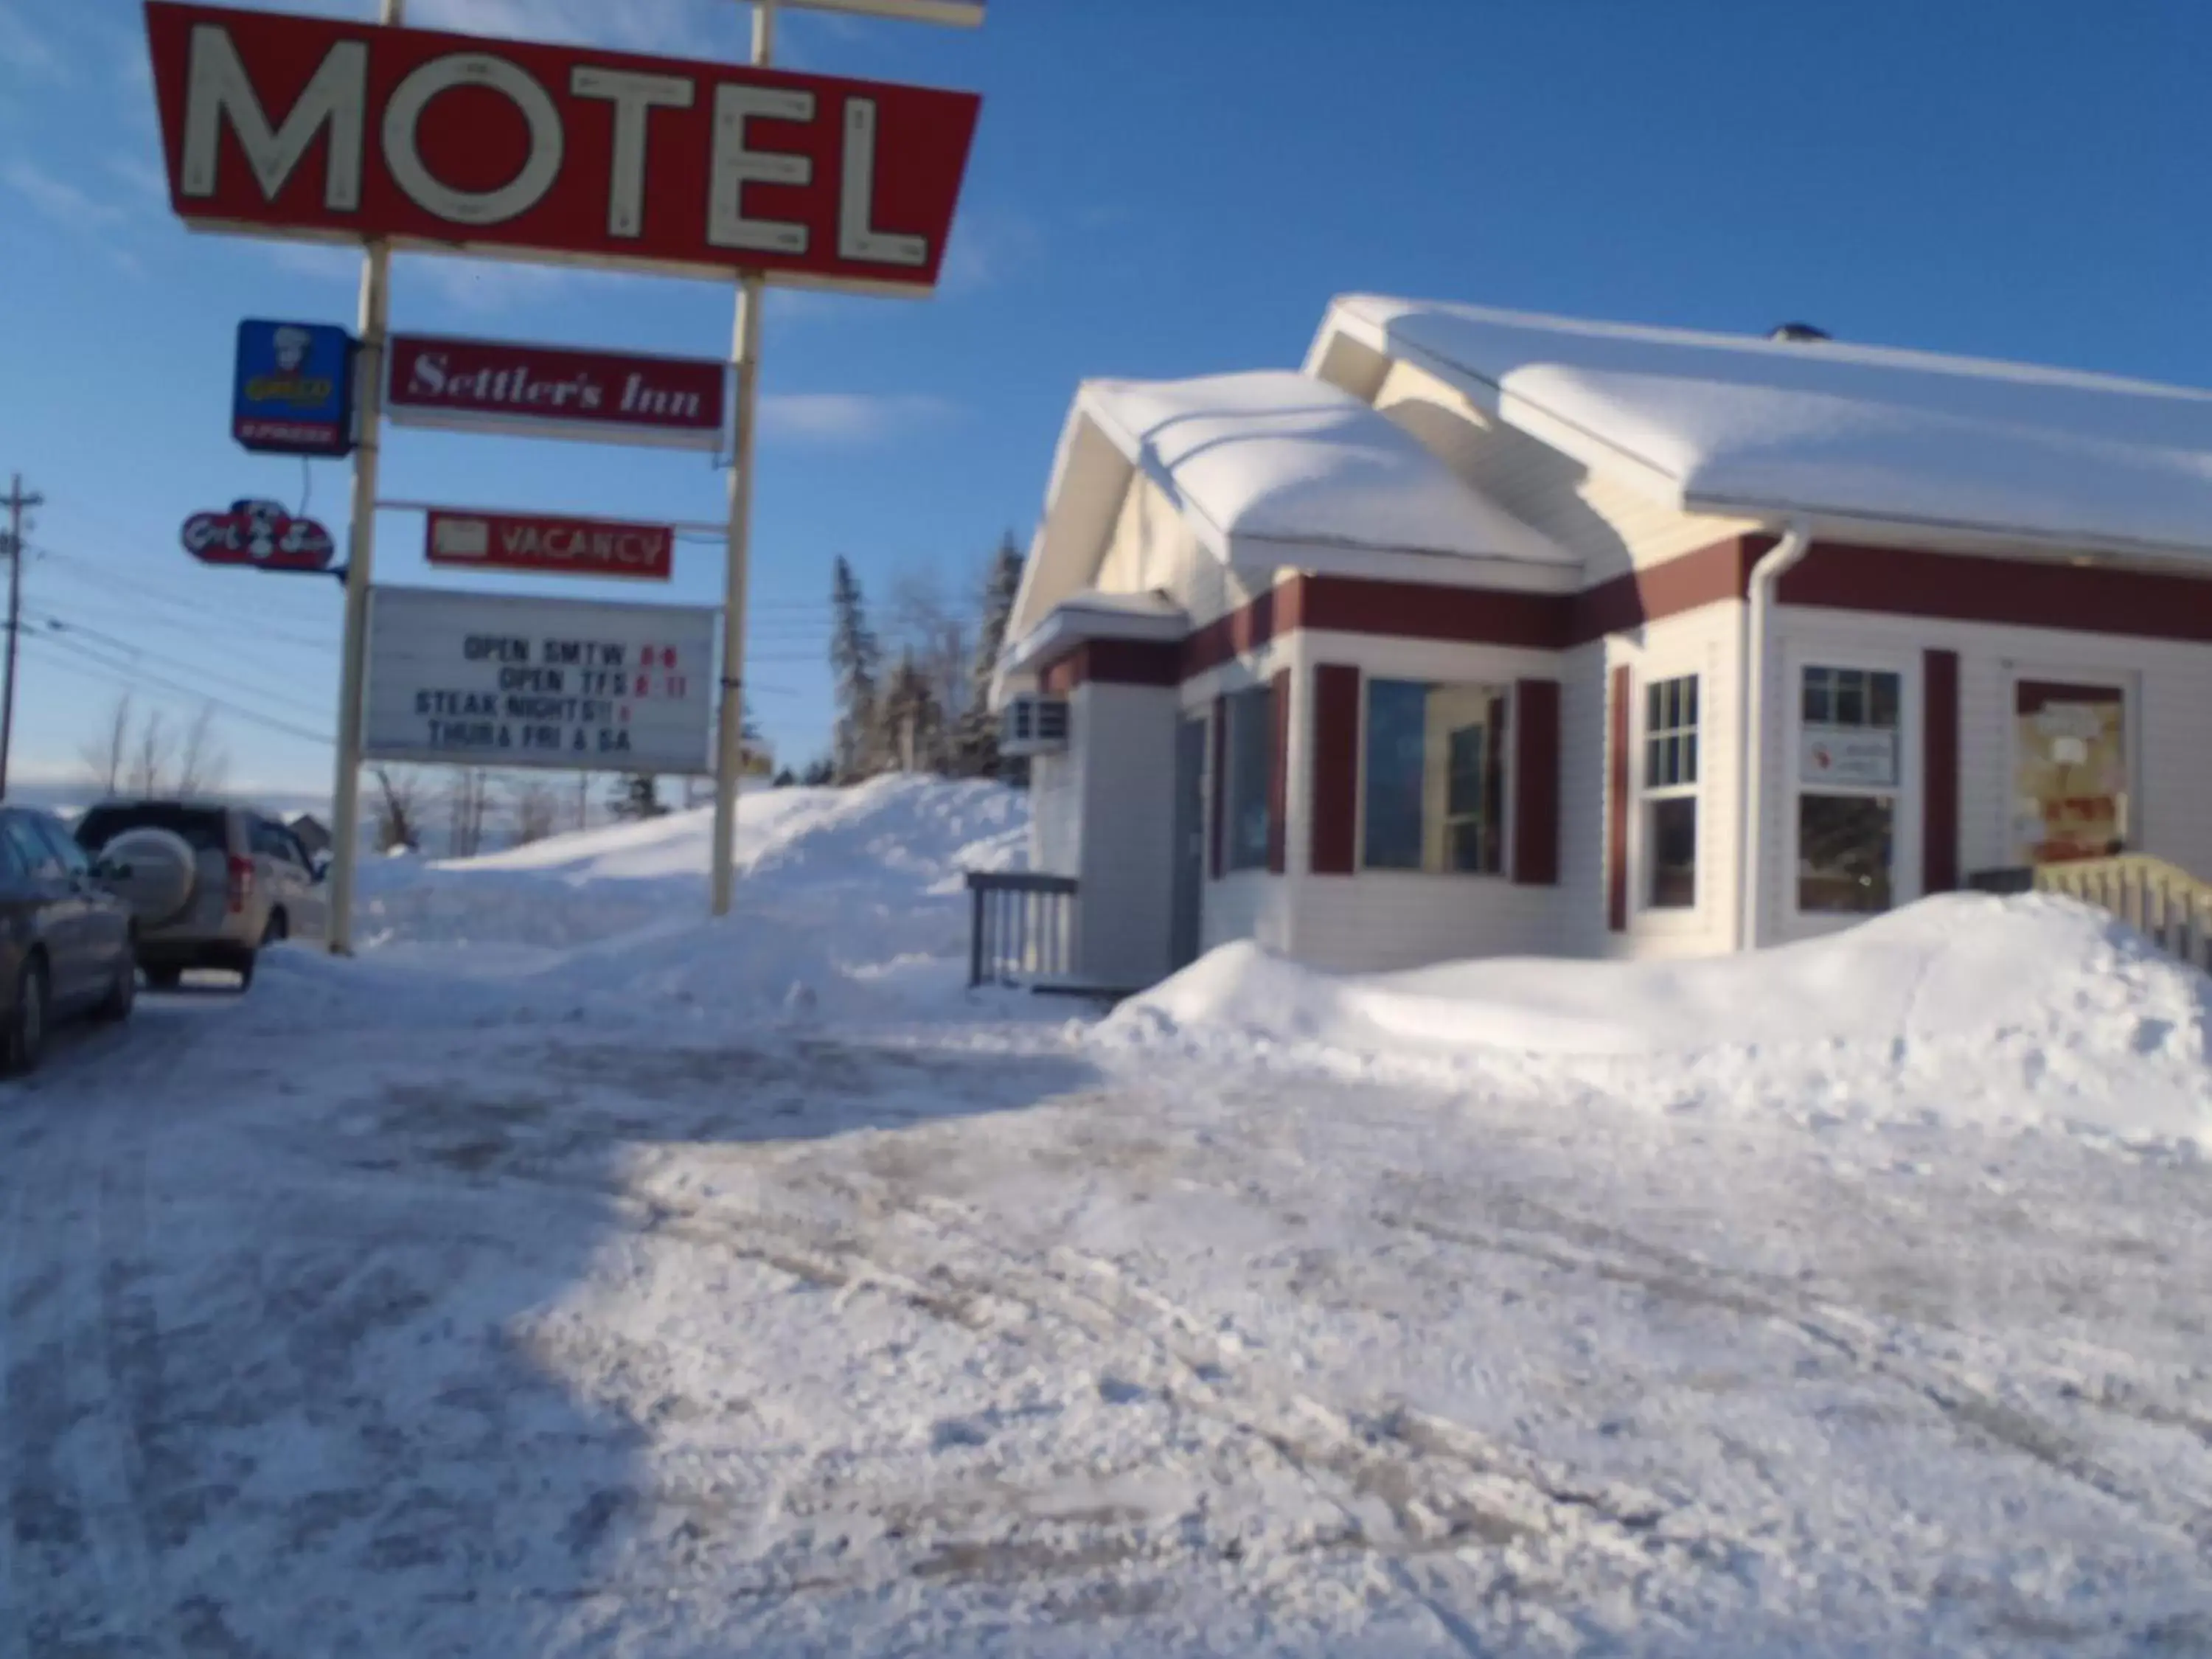 Winter in Settler's Inn & Motel